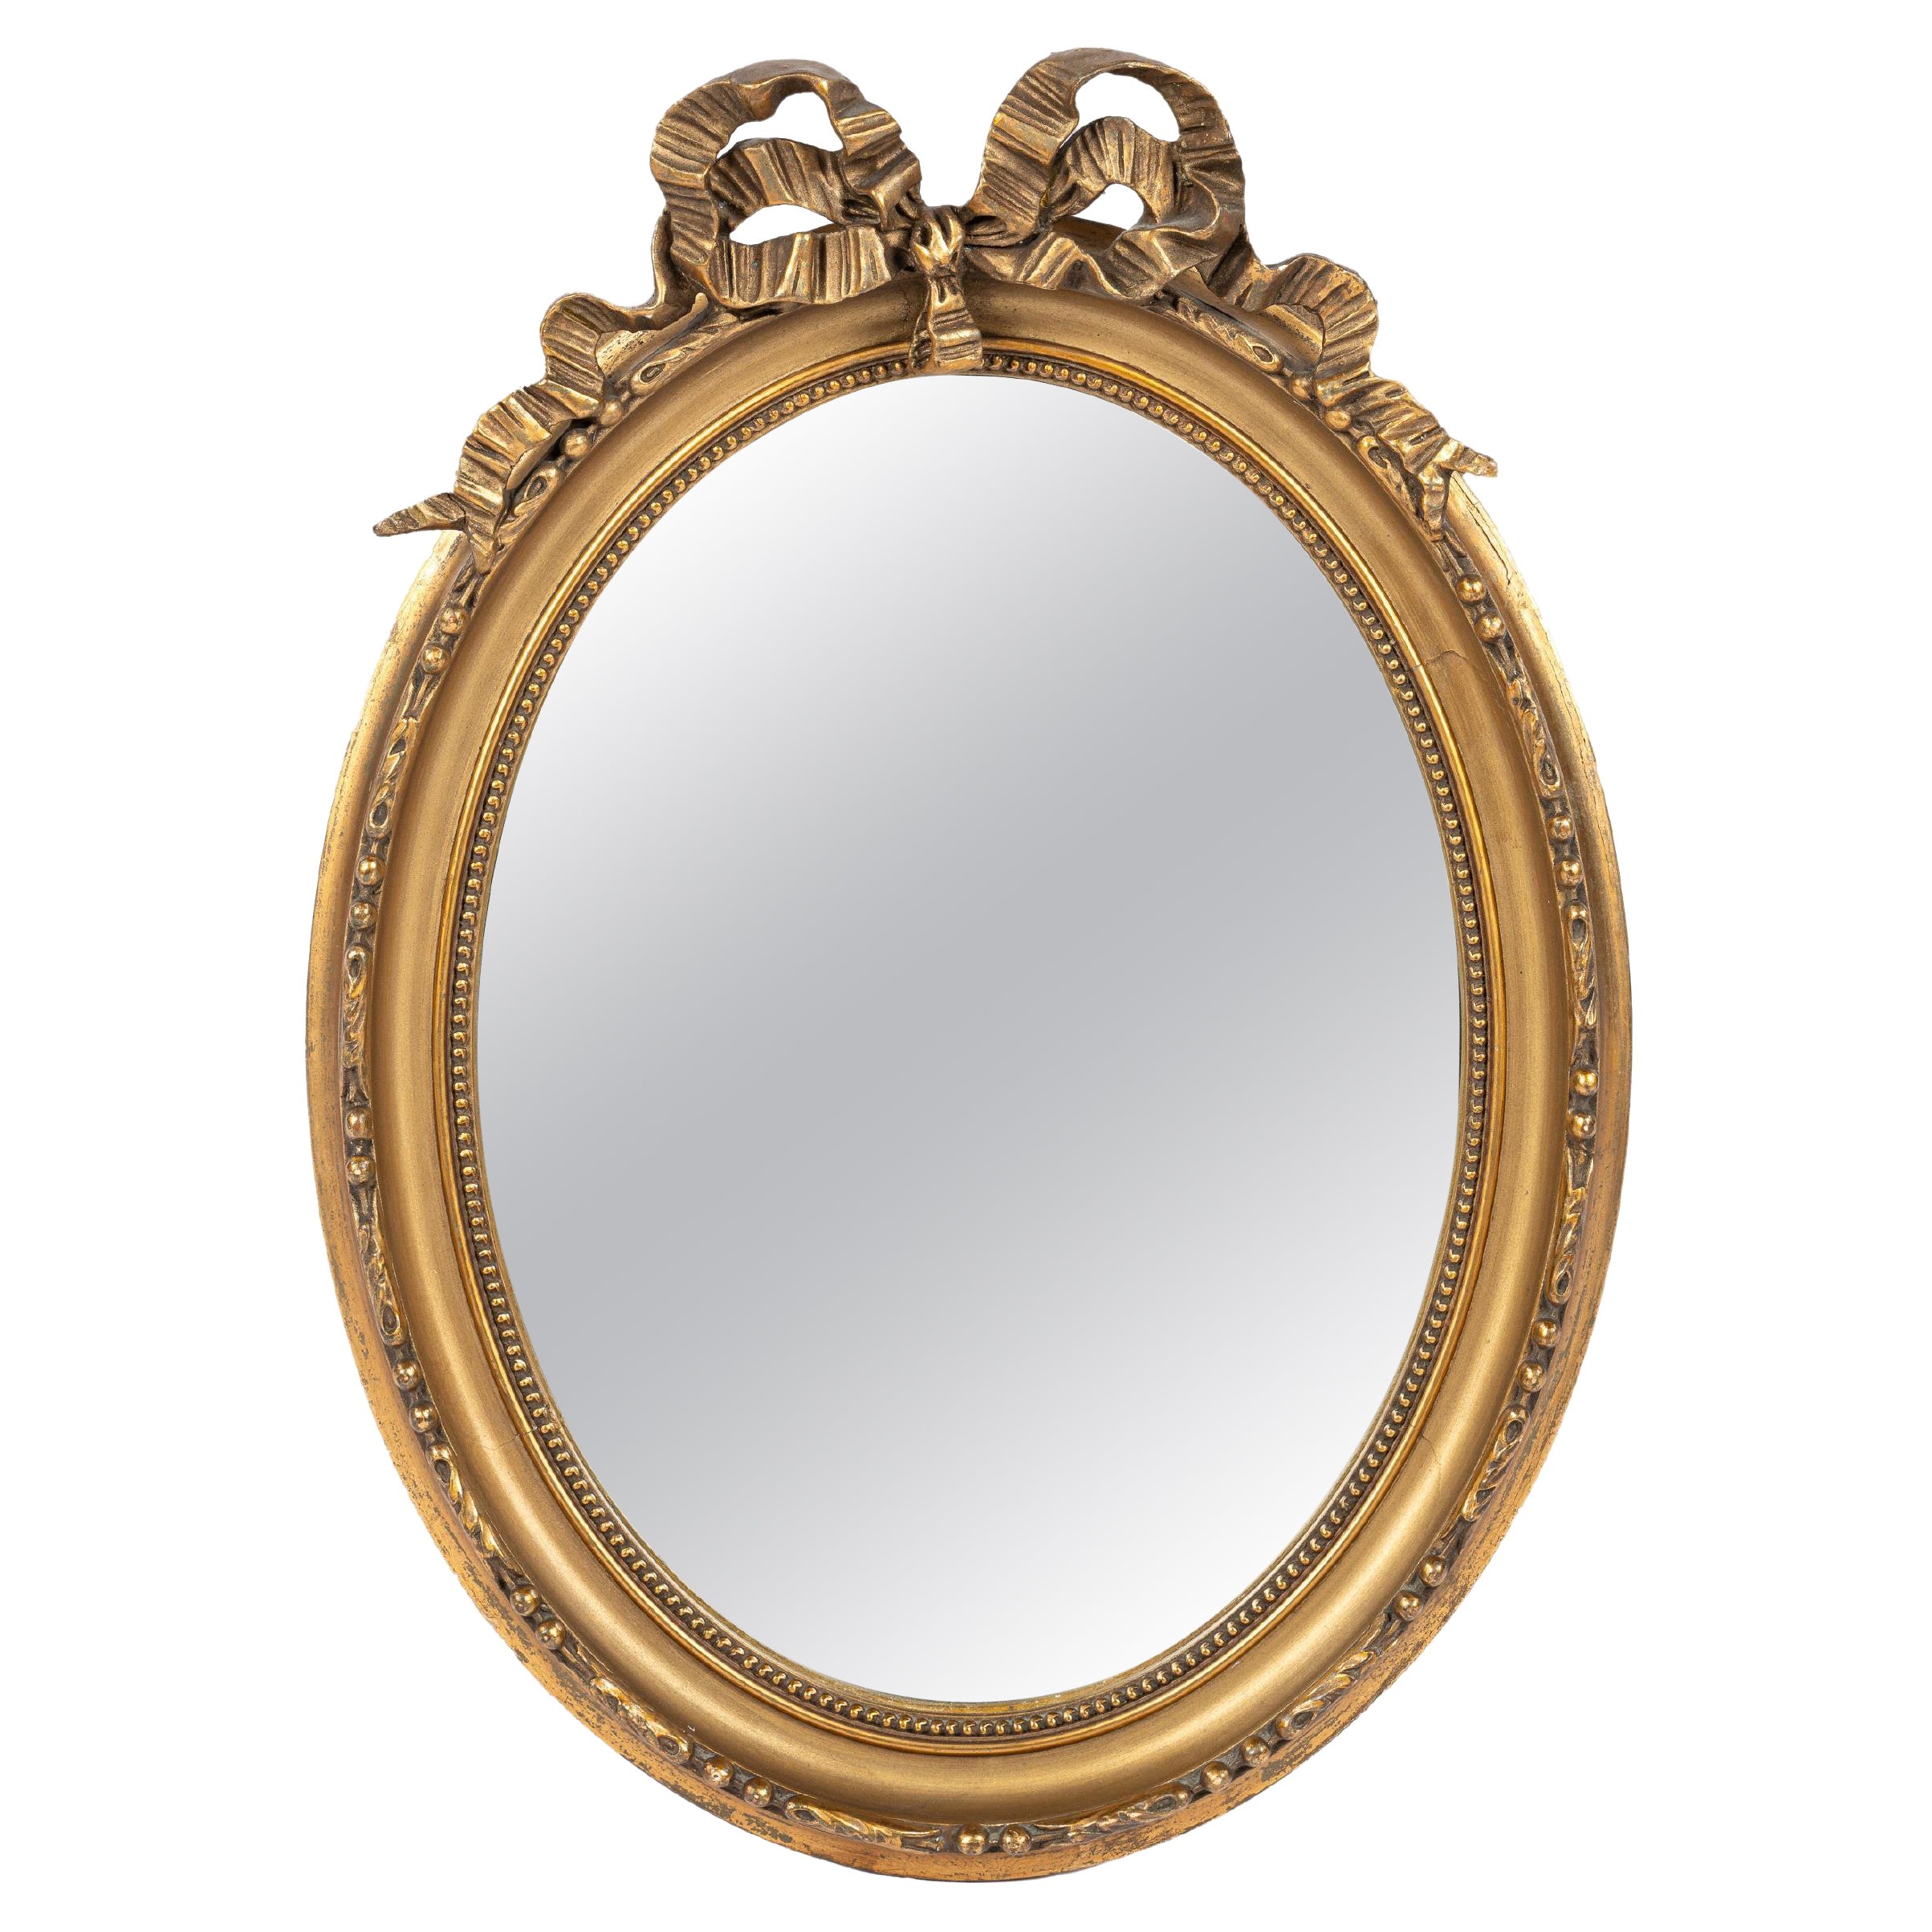 Antique début du 20e siècle, miroir à ruban ovale à nœuds en or doré français.